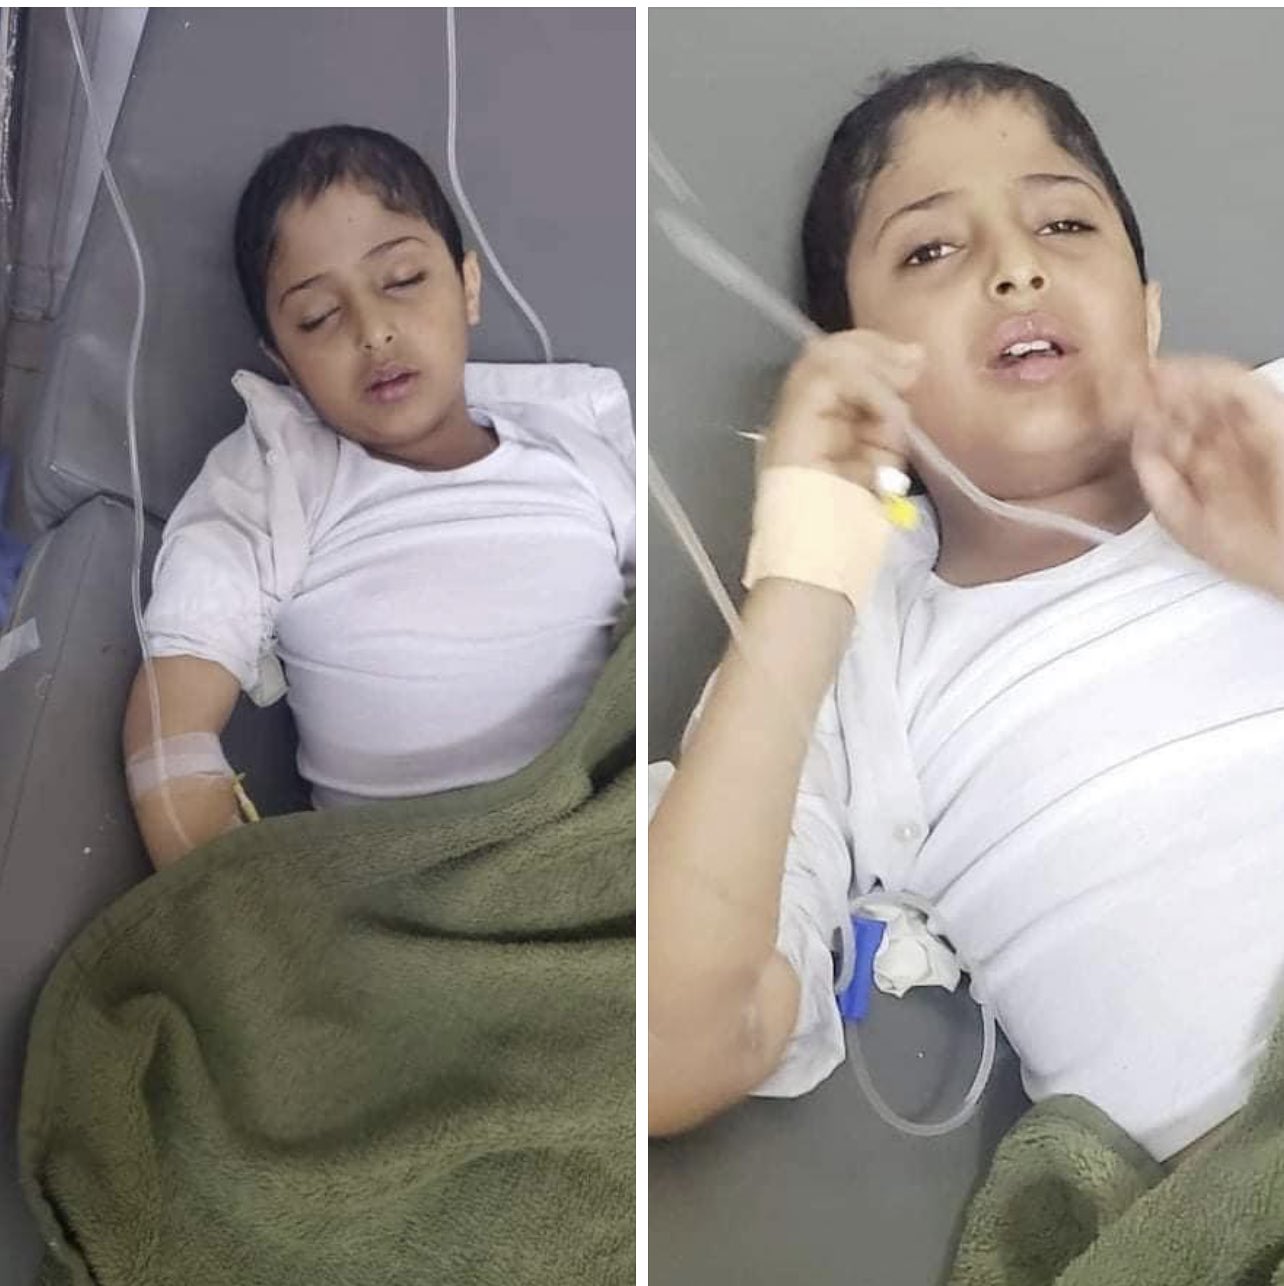 الحوثيون يعترفون بجريمة قتل أطفال السرطان بدواء منتهي ومهرب في صنعاء ويحملون التحالف المسئولية